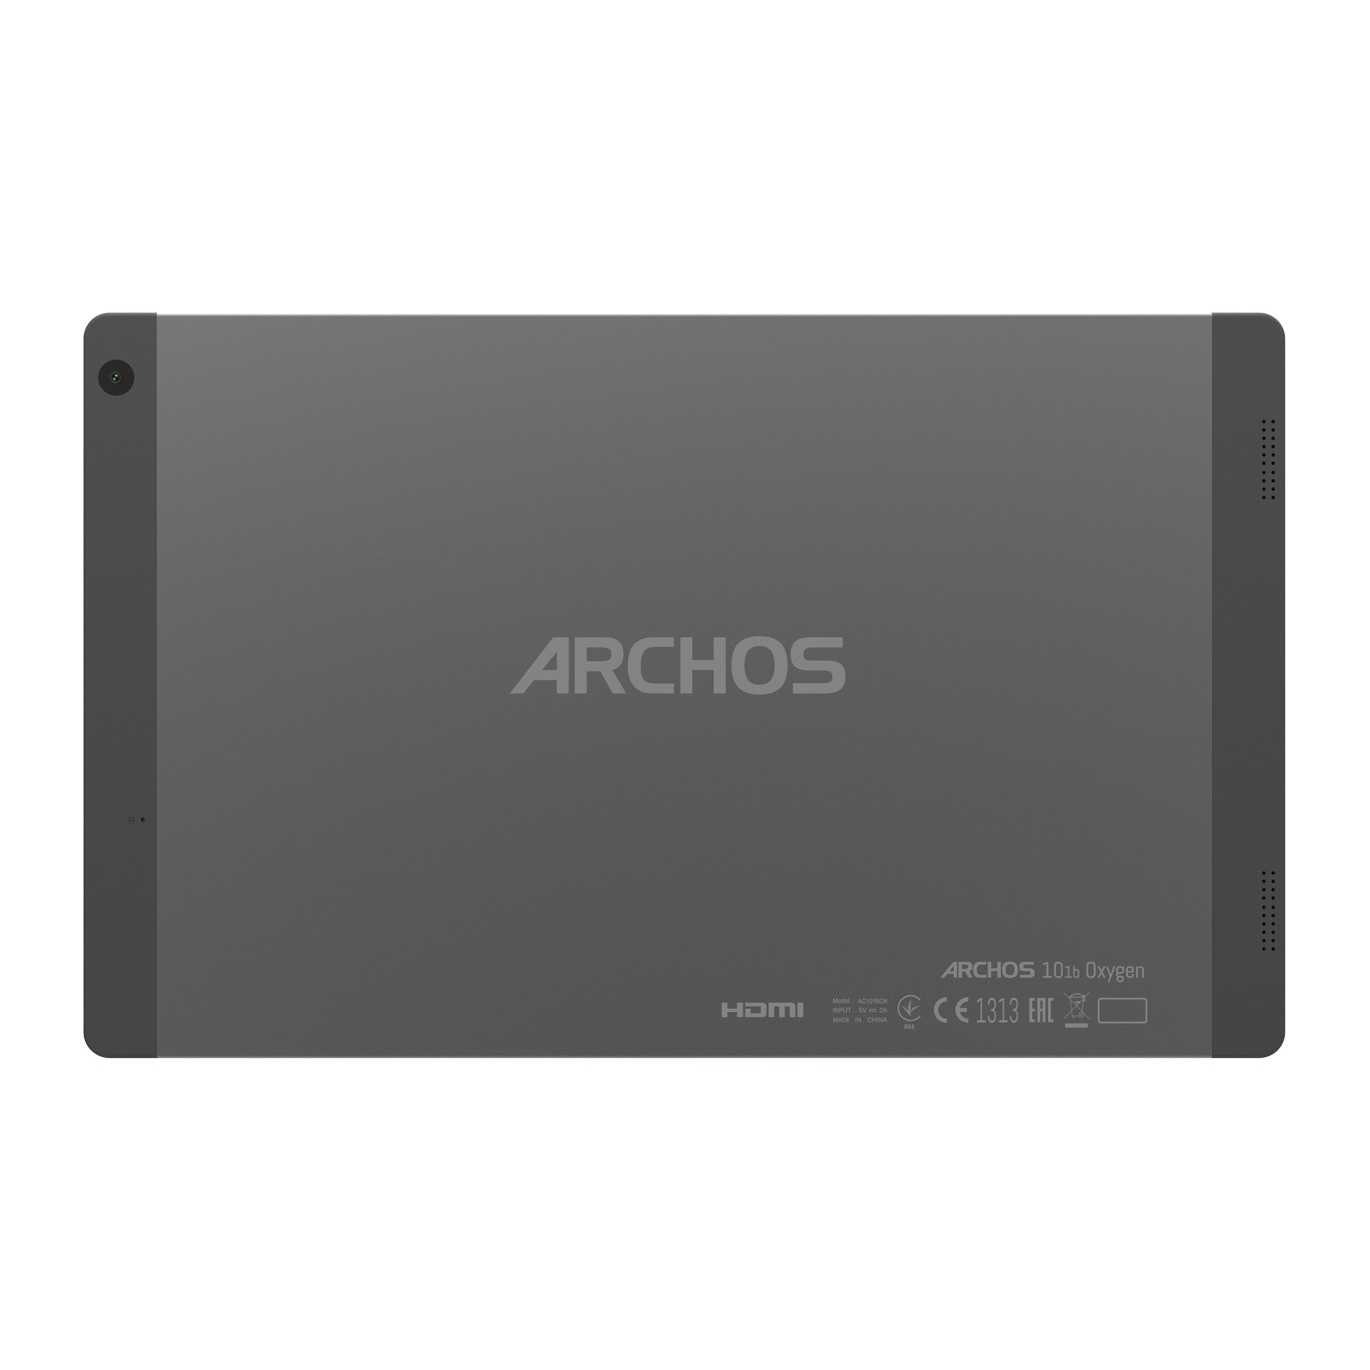 Archos 101 g9 16gb - купить , скидки, цена, отзывы, обзор, характеристики - планшеты